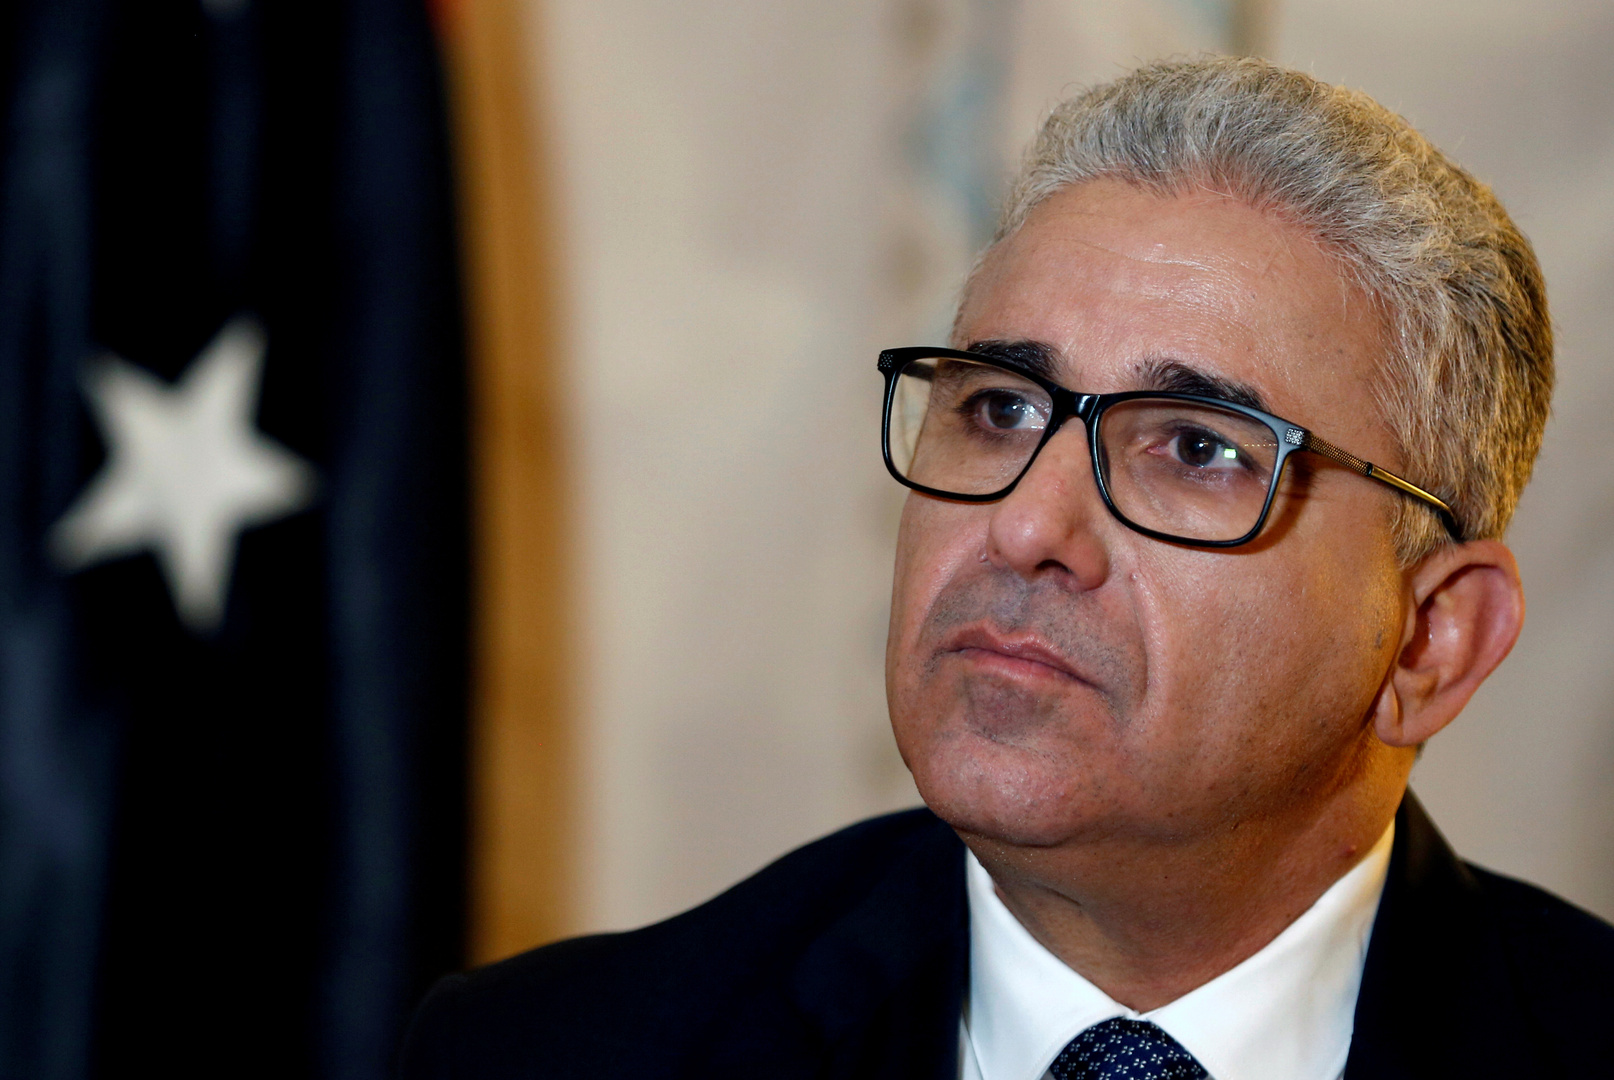 فتحي باشاغا يكشف عن خططه بشأن دمج المسلحين في الحياة العامة في حال فوزه برئاسة ليبيا